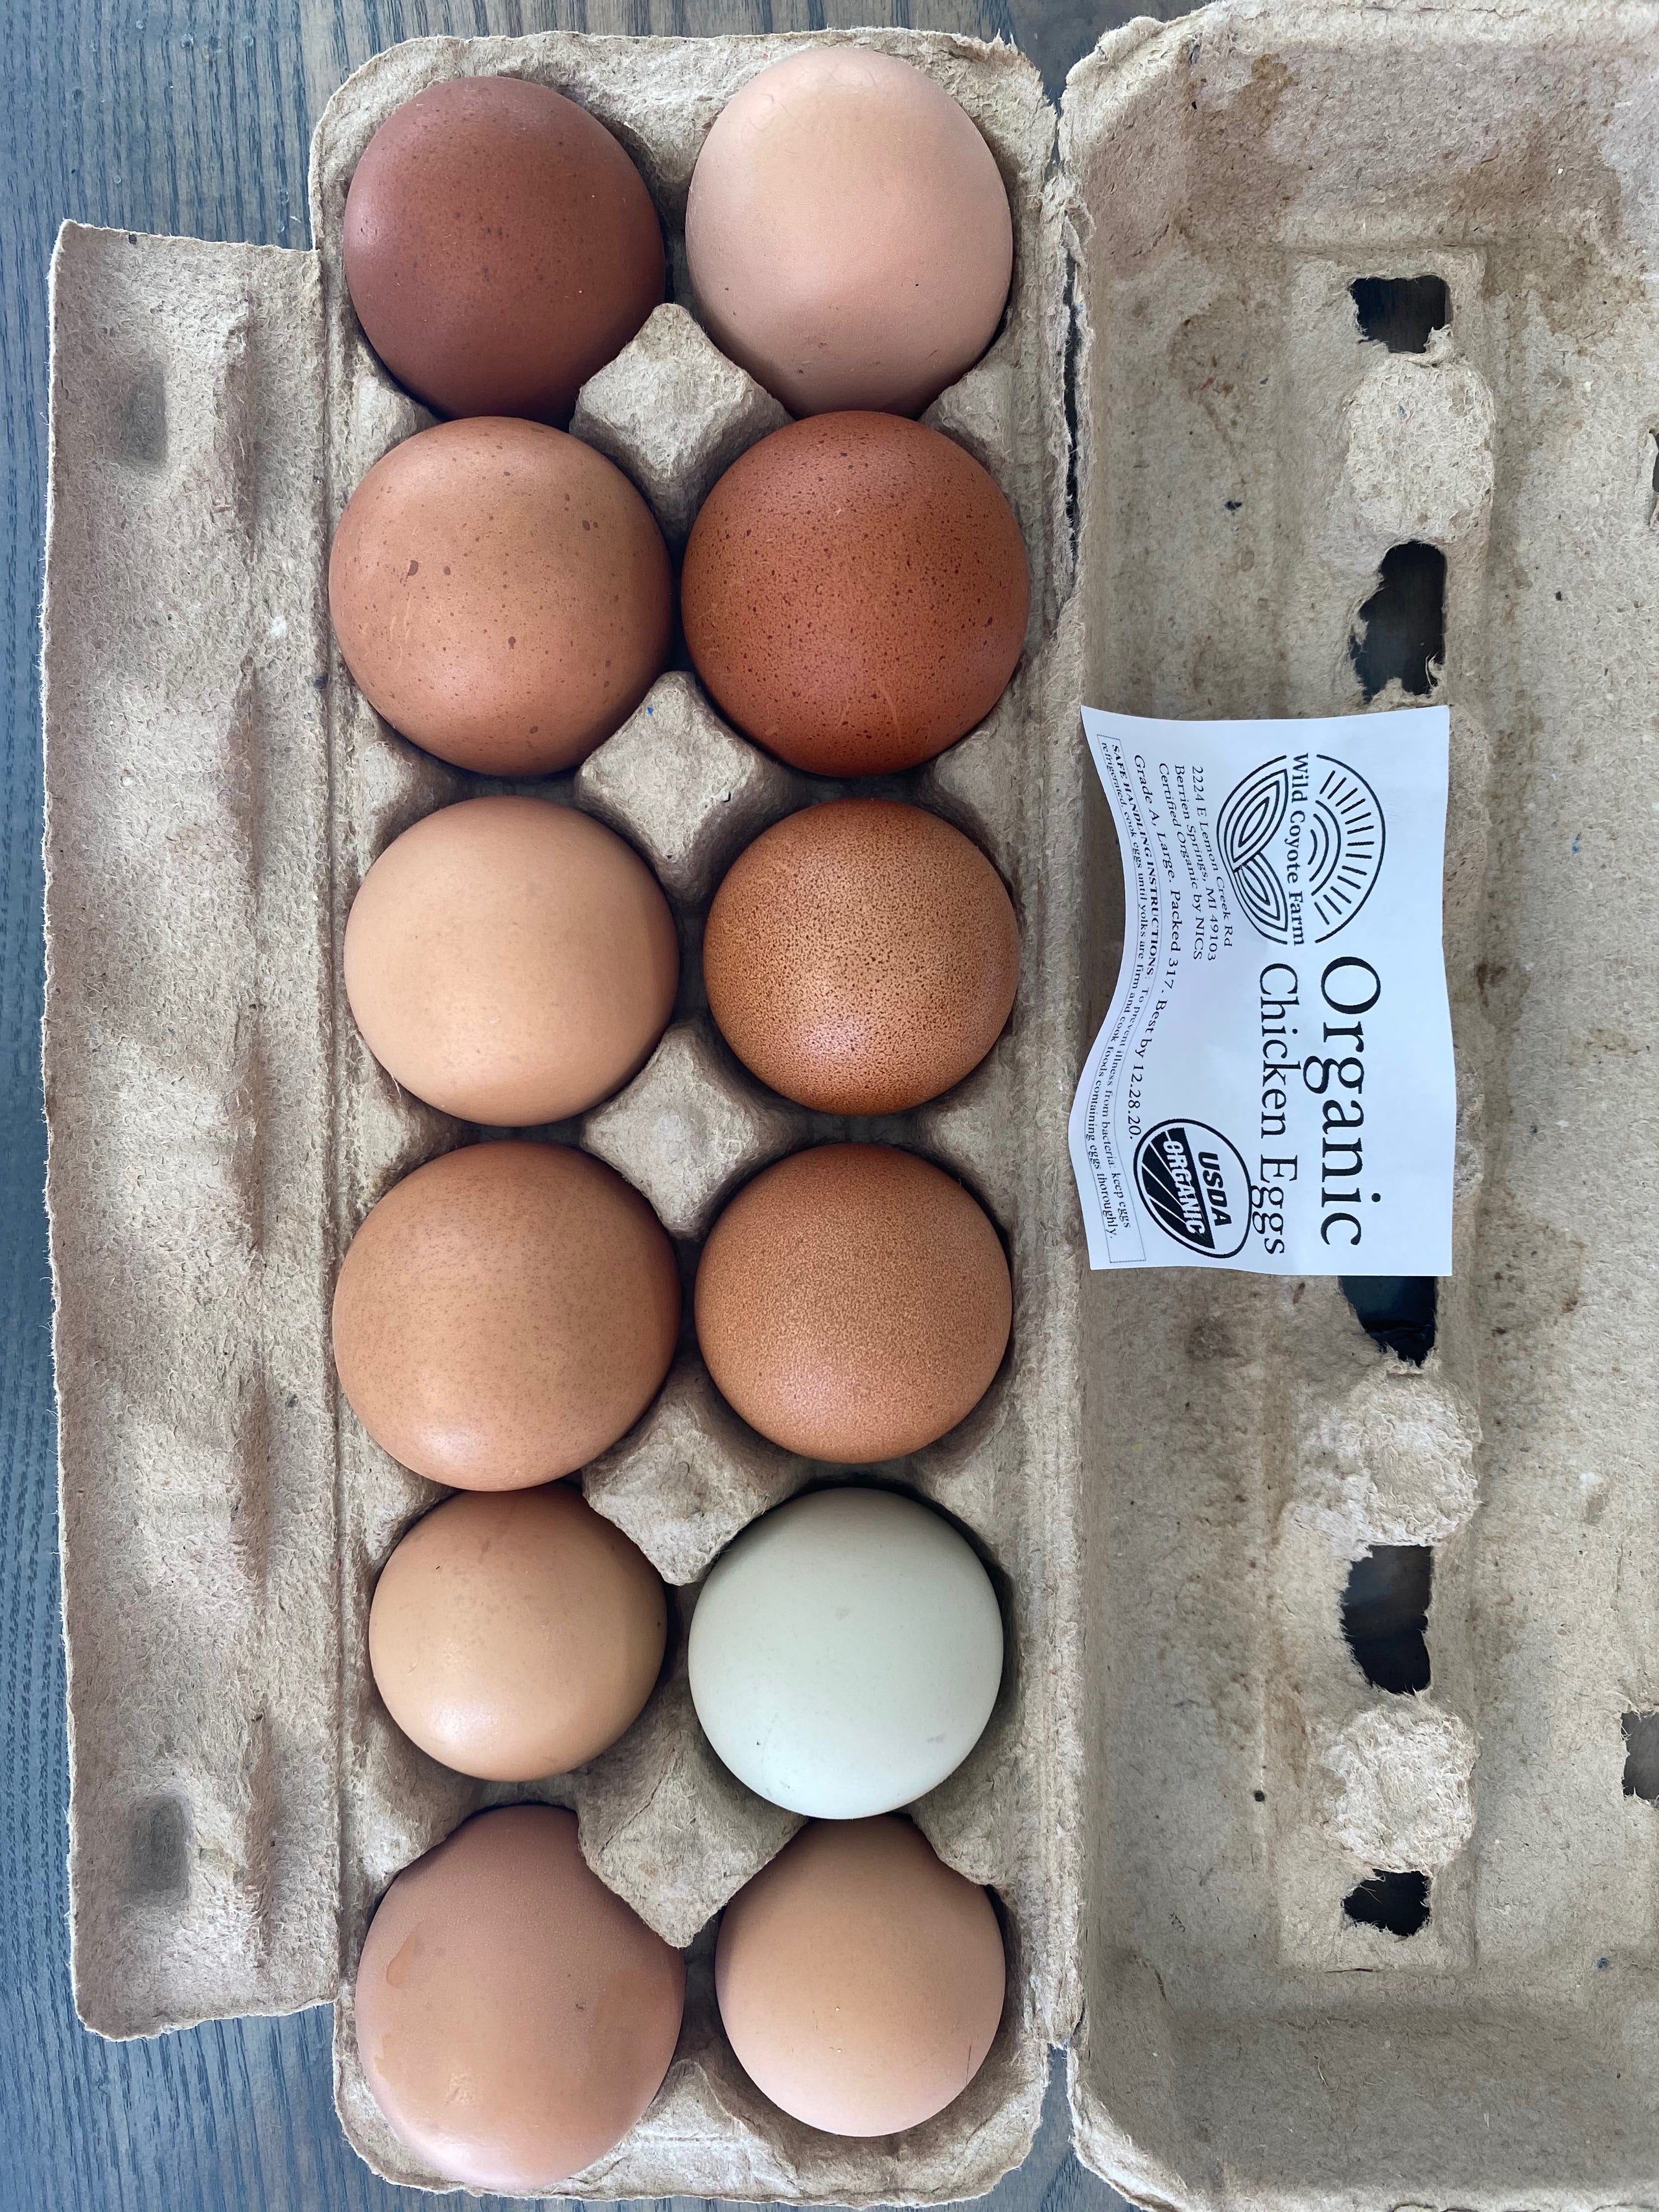 Free Range Chicken Eggs (1 Dozen Brown)